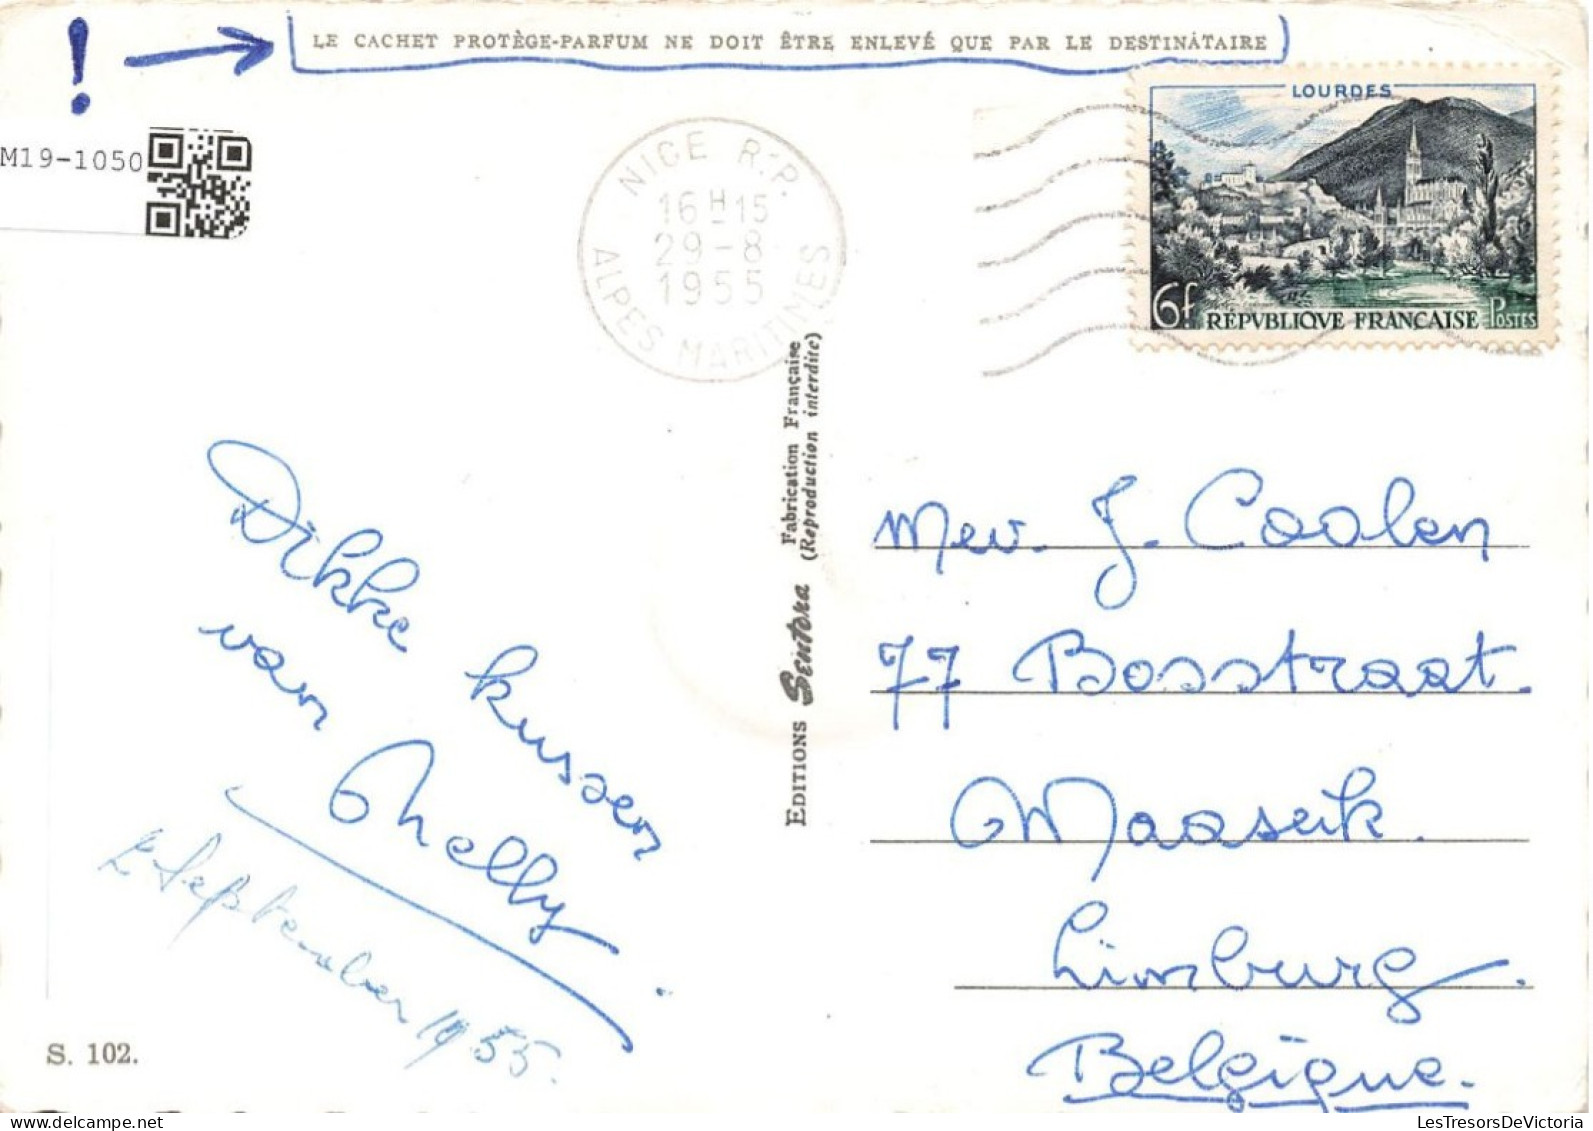 SOUVENIR DE LA CÔTE D'AZUR - Monte-Carlo - Monaco - Menton - Nice - Beaulieu - Colorisé - Carte Postale - Gruss Aus.../ Gruesse Aus...